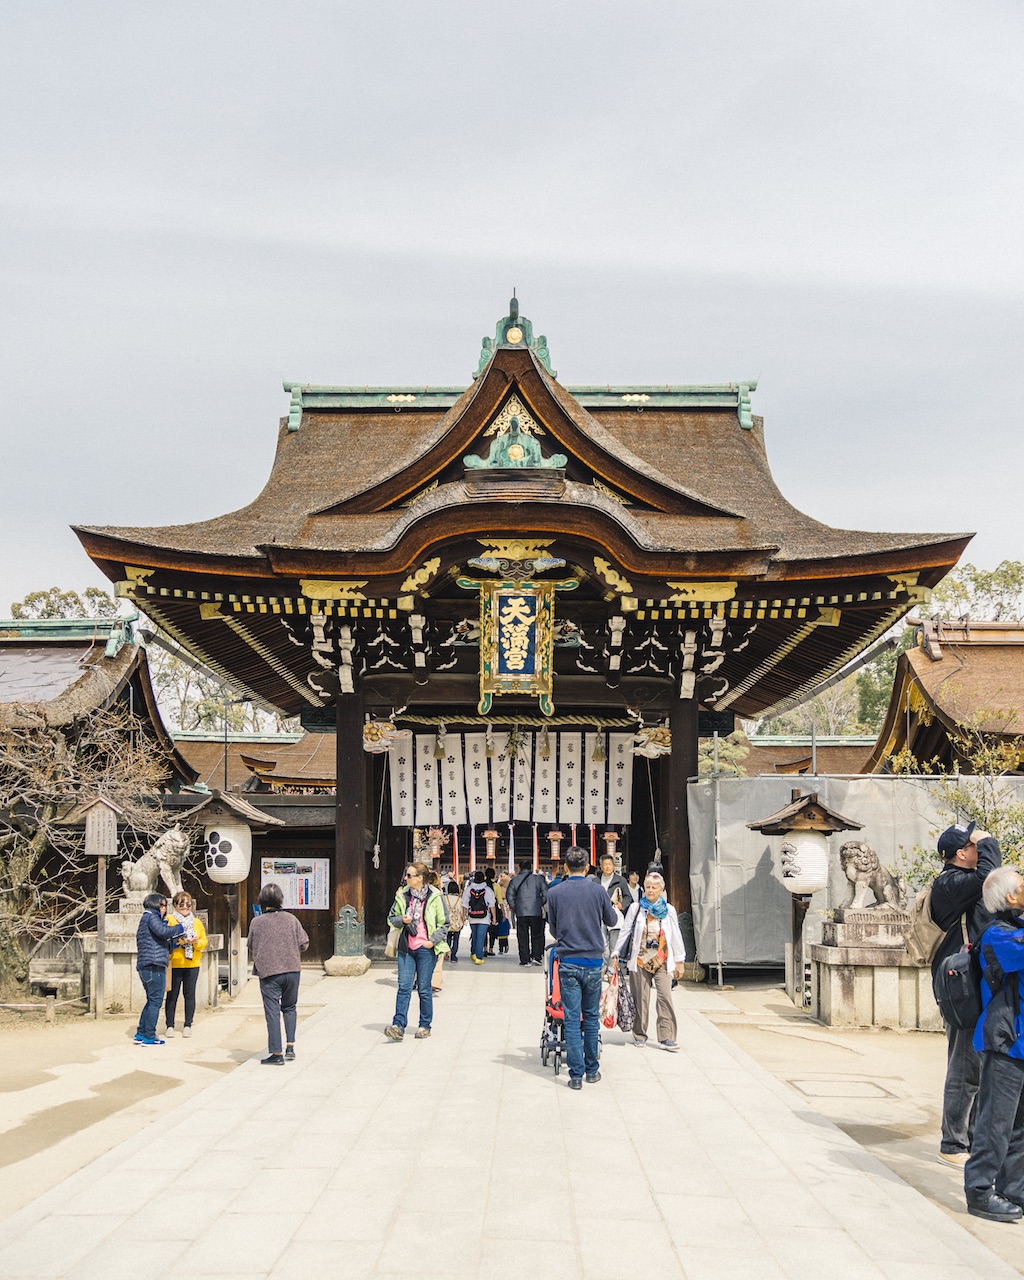 Kyoto, Japan - Kitano Tenmangu Shrine in in the Kitano neighborhood